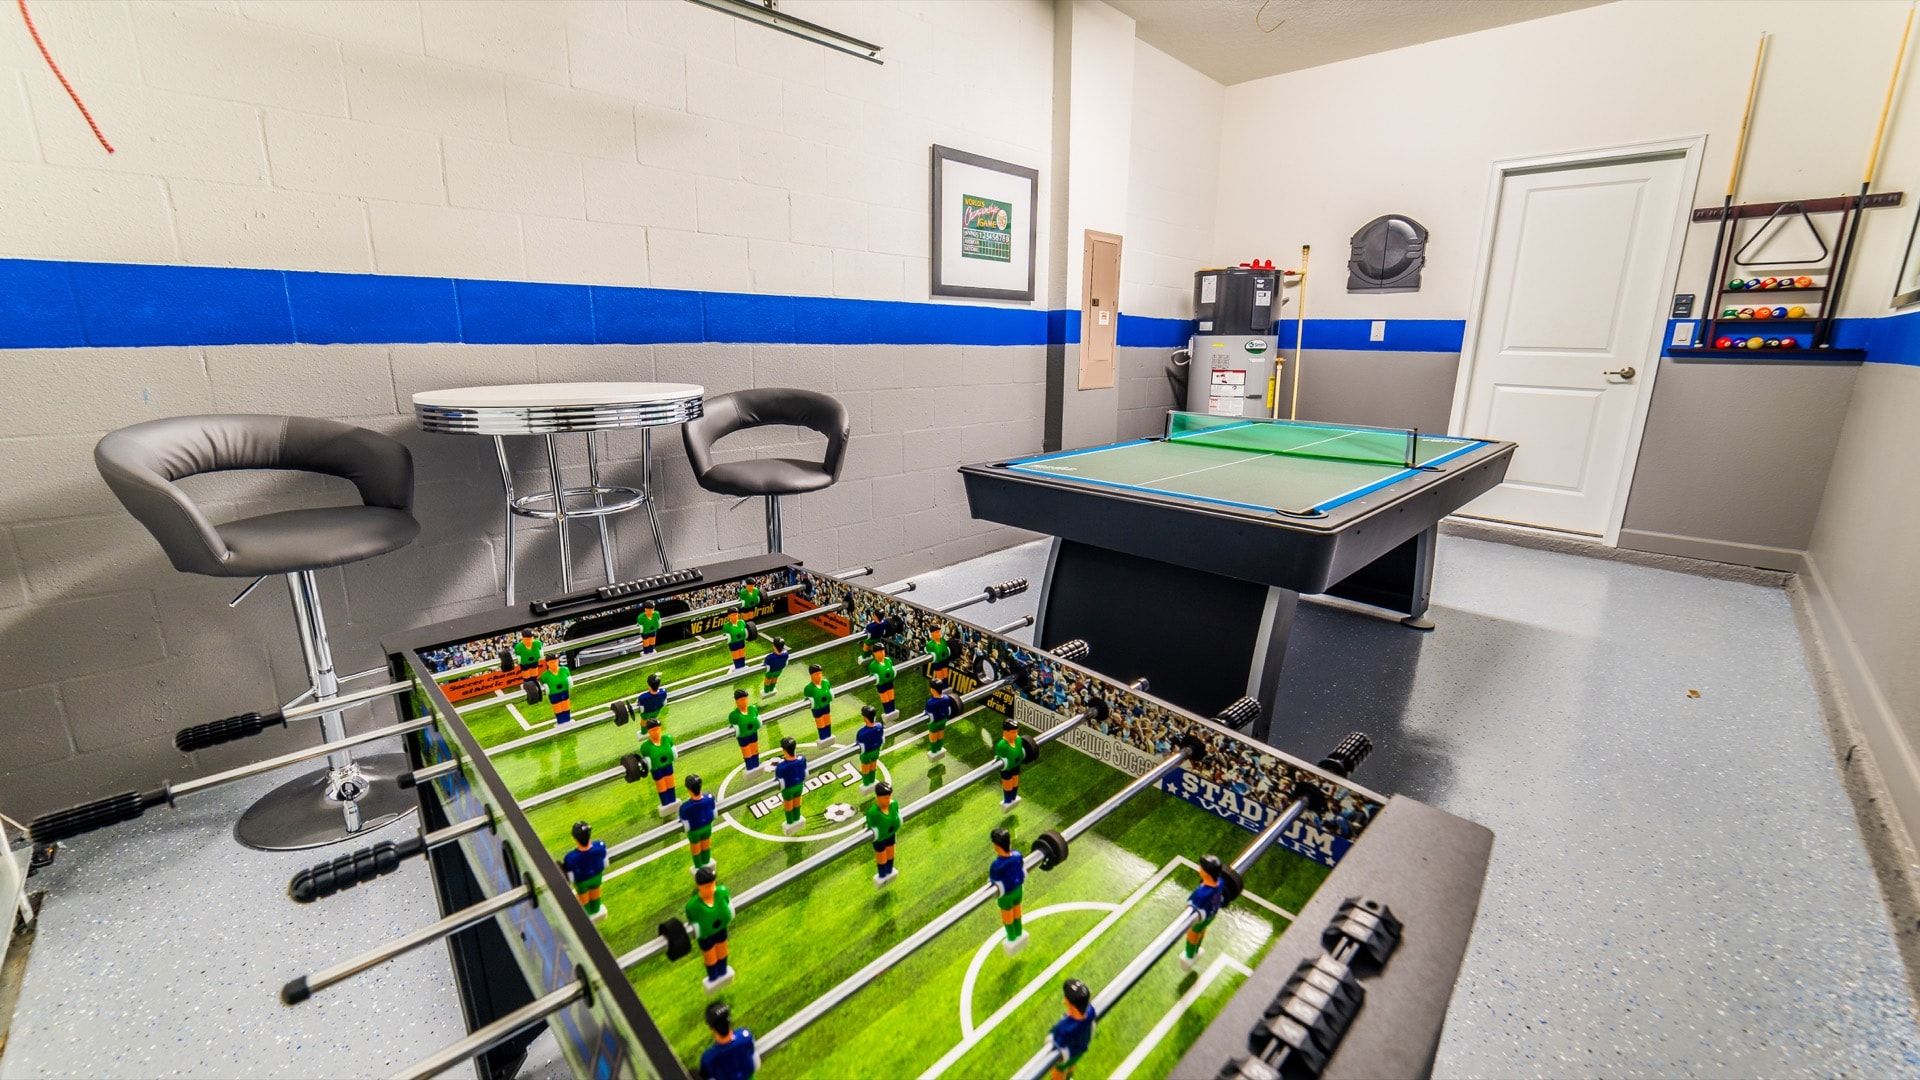 Game Room (Angle )
Pool/Ping Pong Table
Foosball